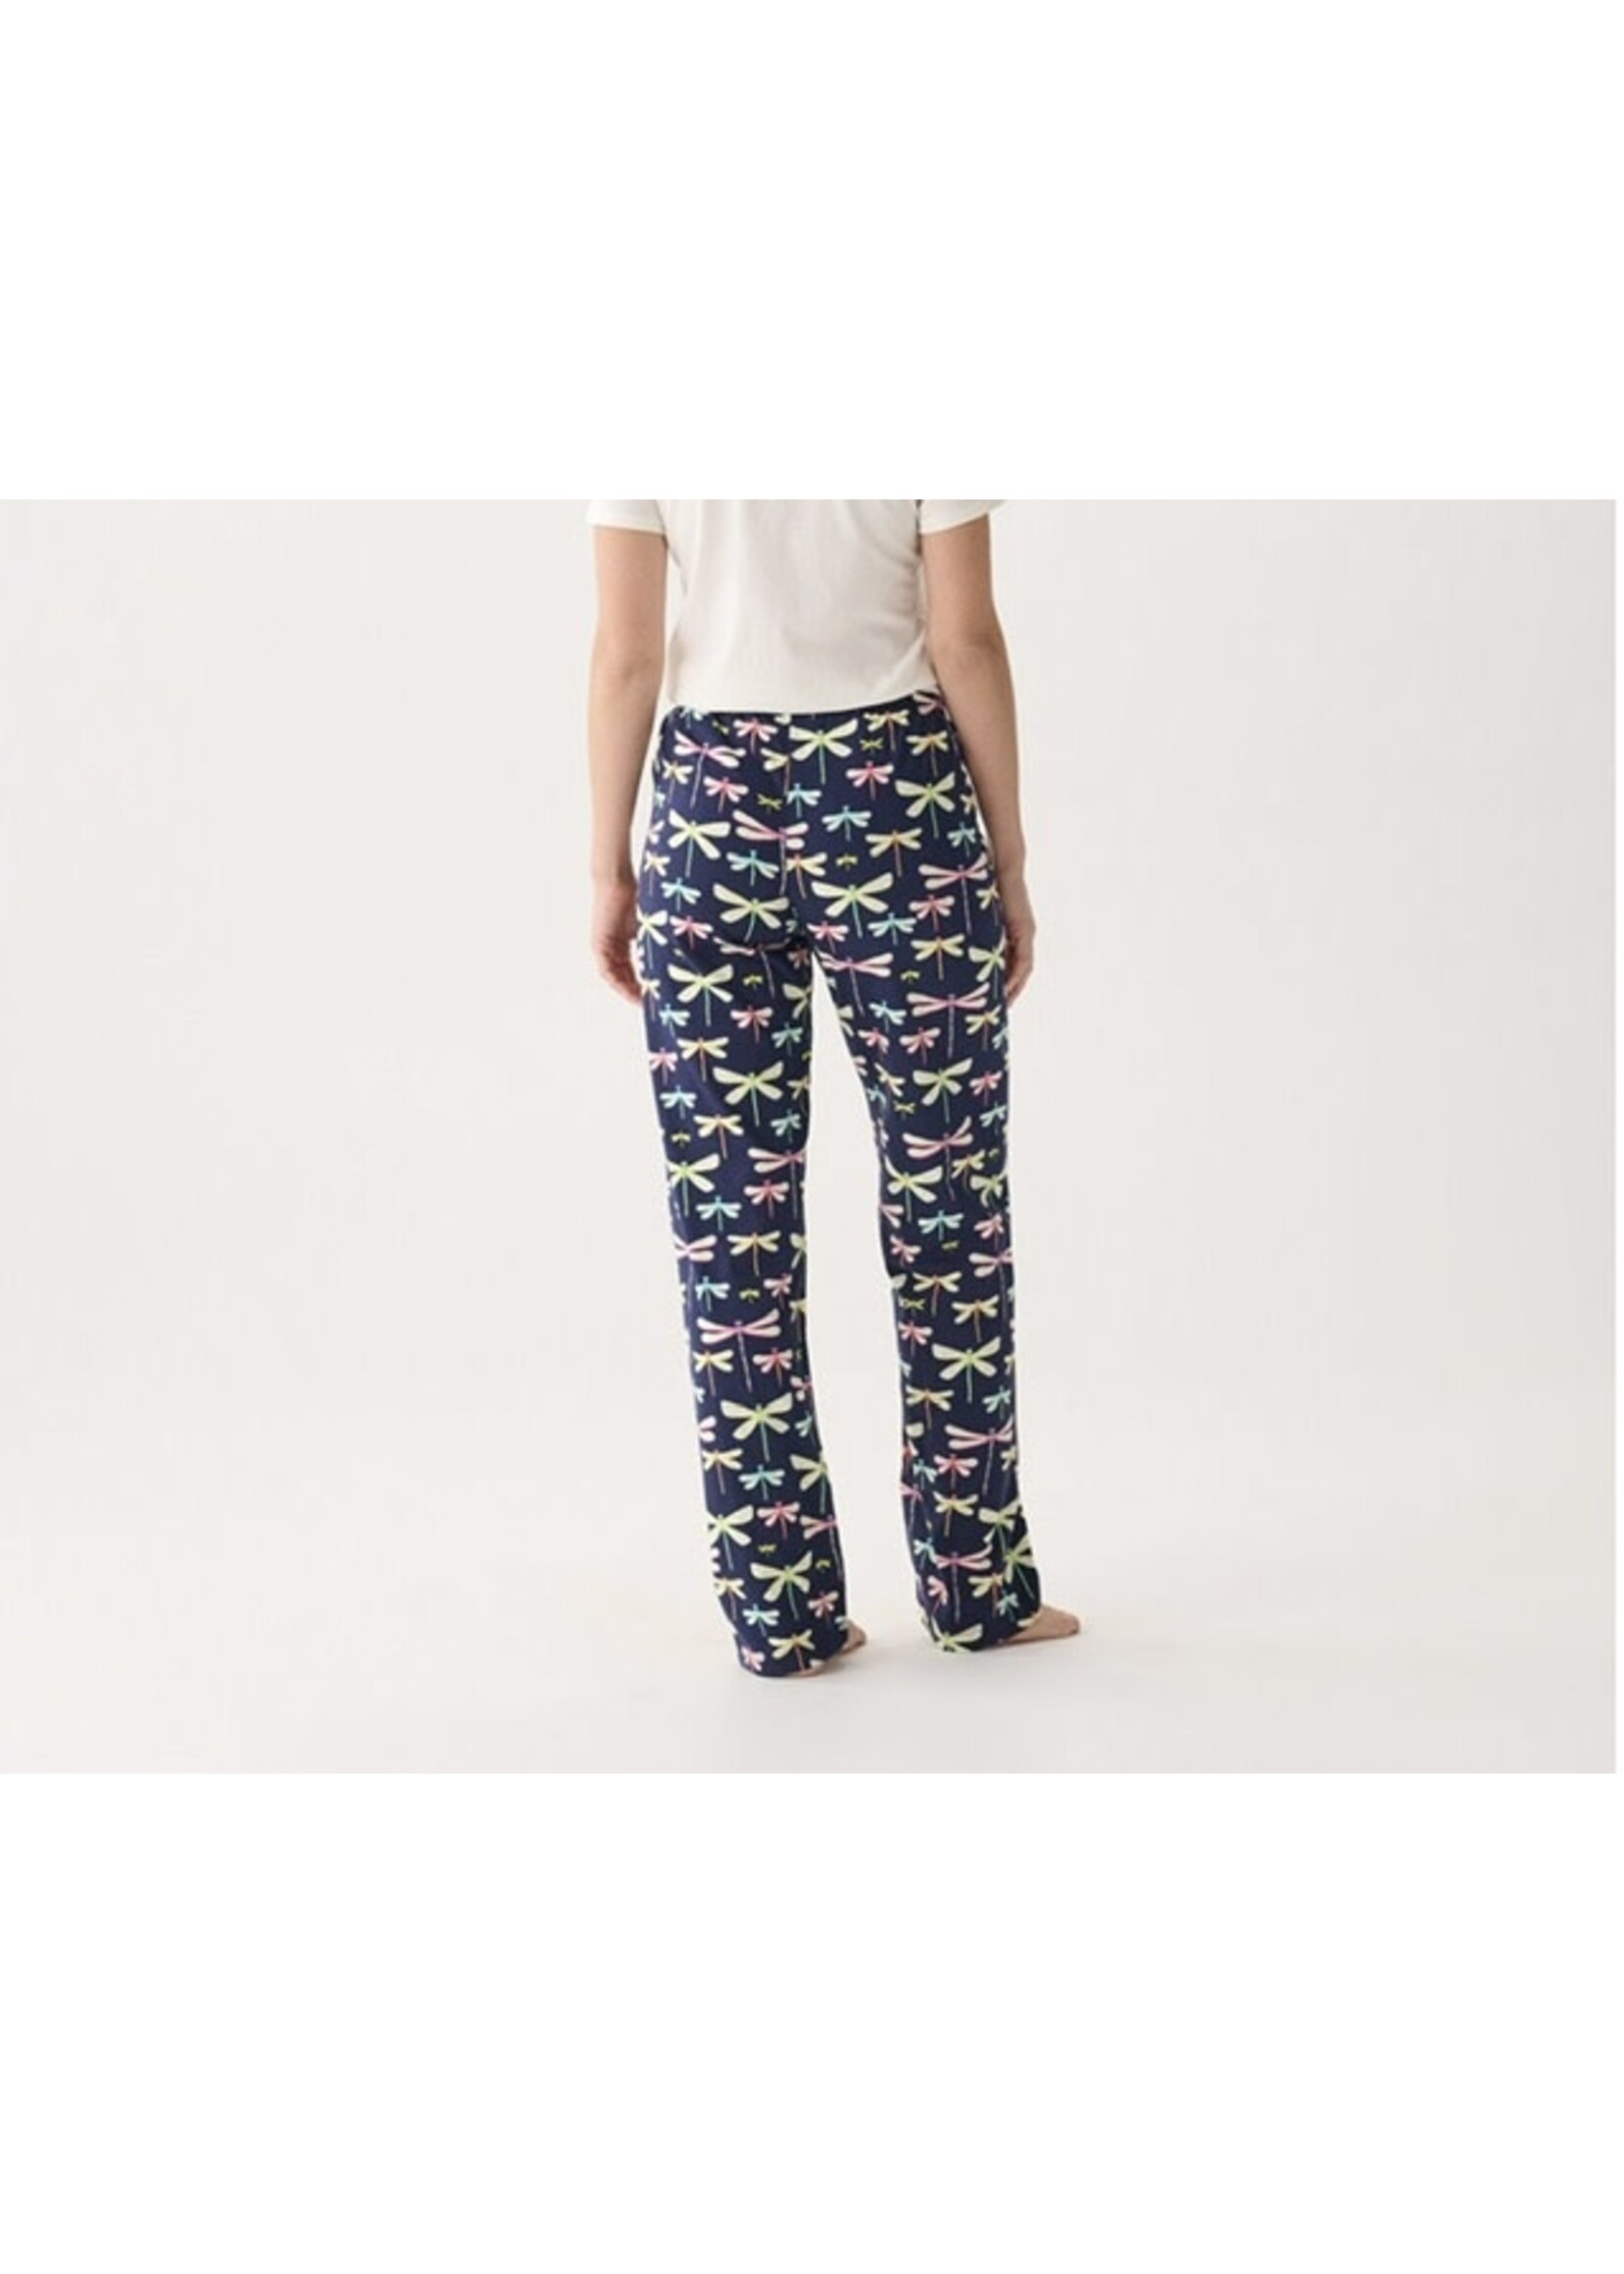 Hatley Dragonflies Women's Jersey Pajama Pants